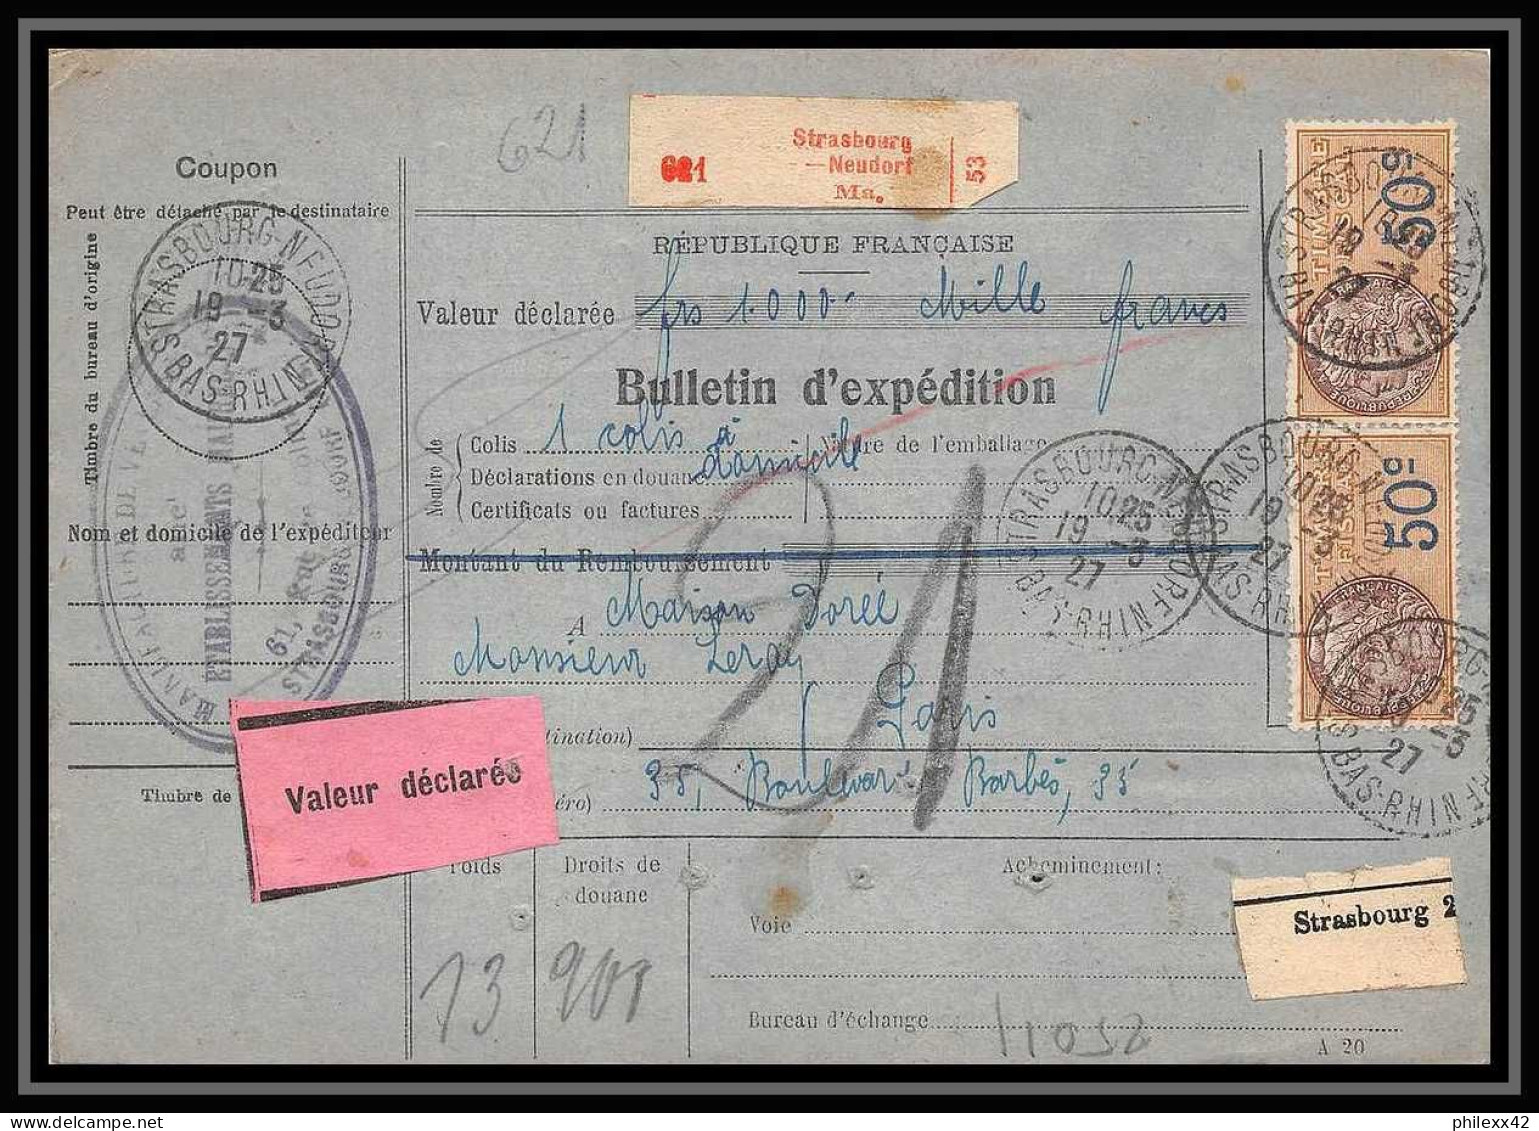 25011 Bulletin D'expédition France Colis Postaux Fiscal Haut Rhin 1927 Strasbourg Semeuse Merson 123 Valeur Déclarée - Cartas & Documentos